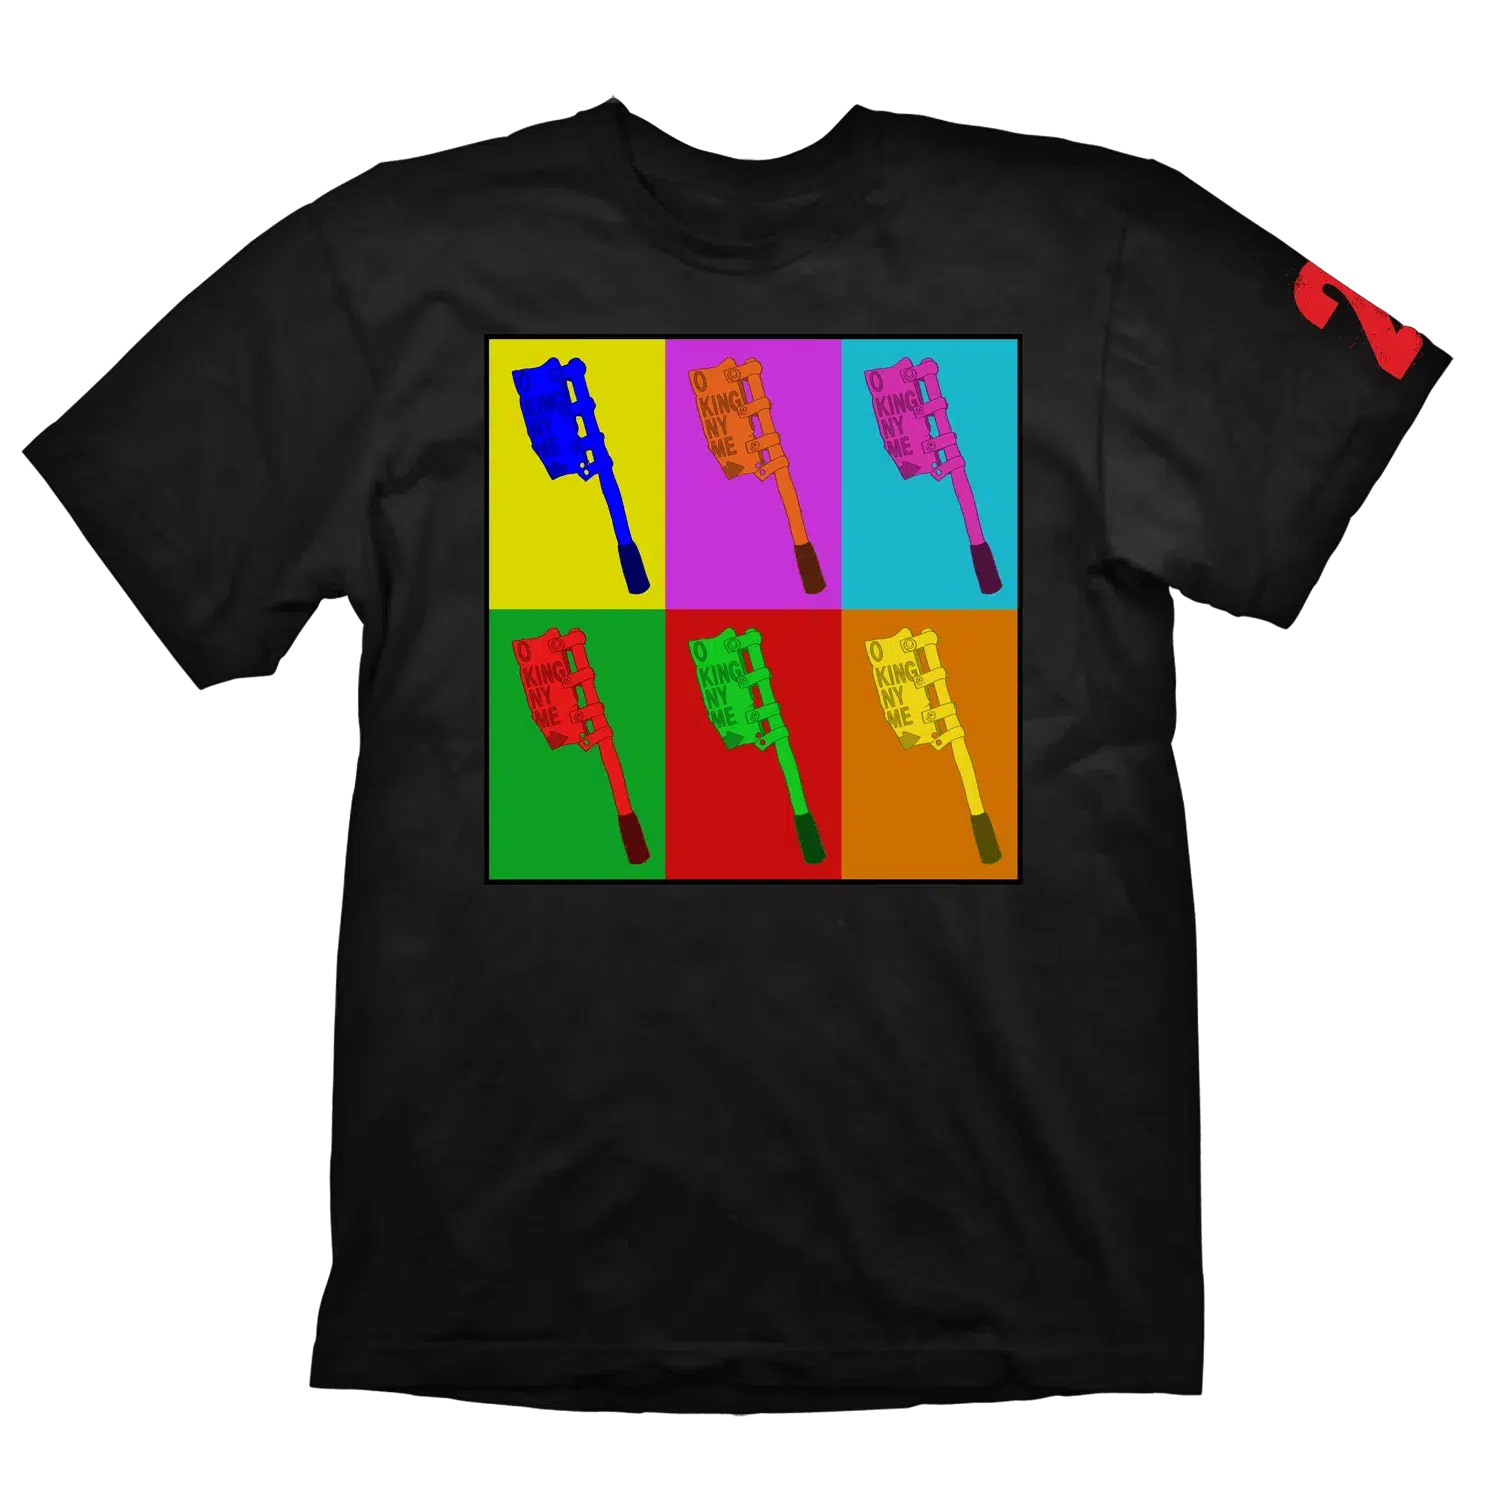 Dying Light 2 T-Shirt "Cleaver" Black XL